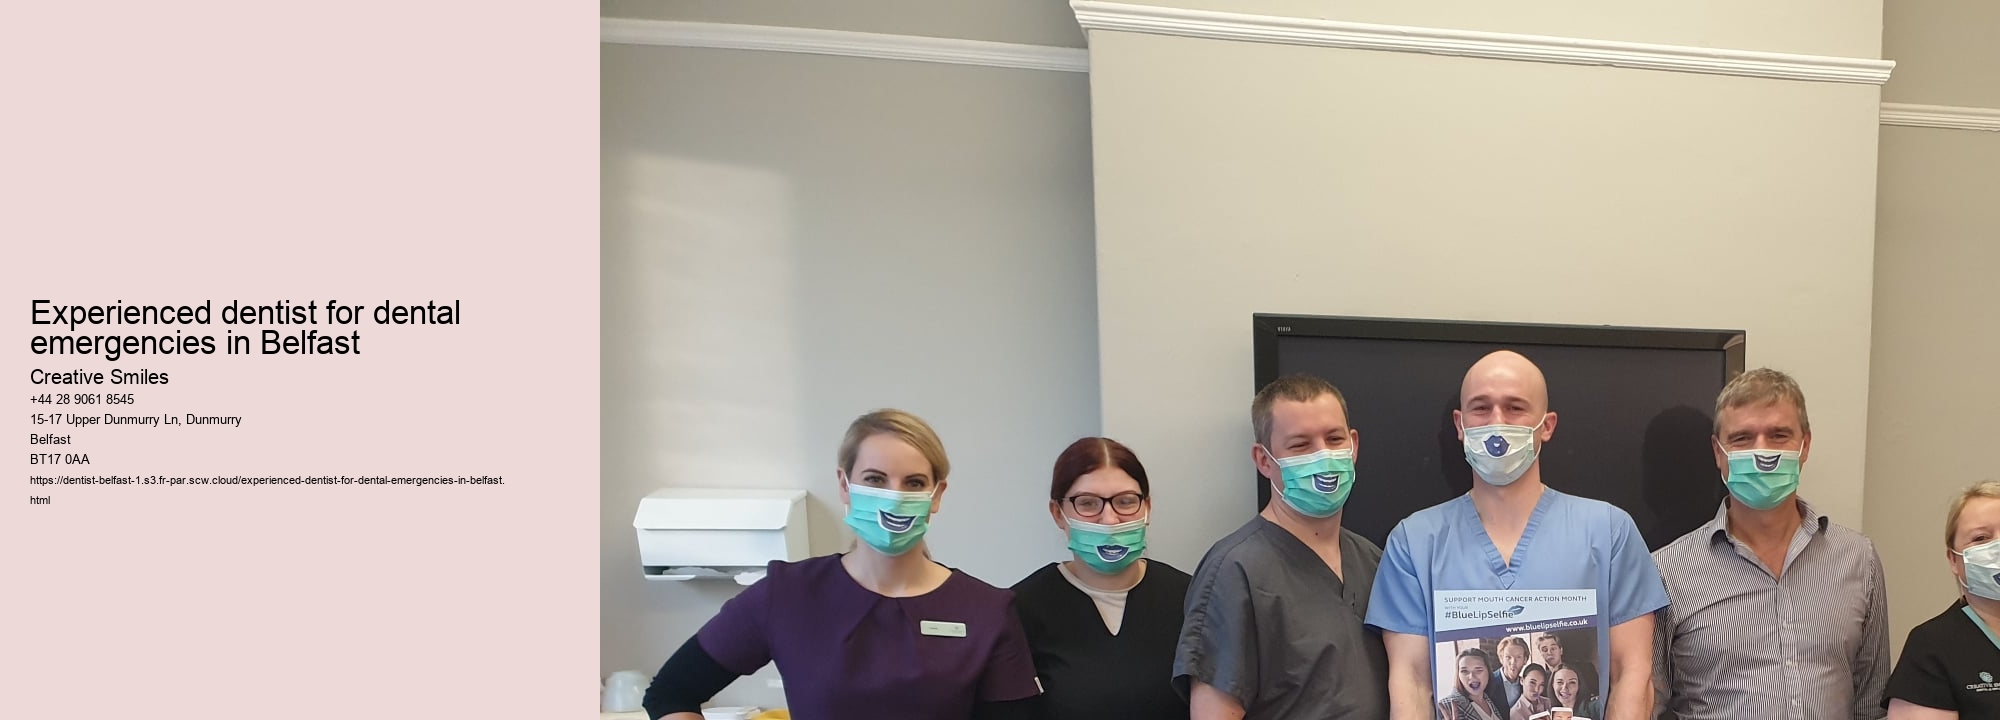 Experienced dentist for dental emergencies in Belfast